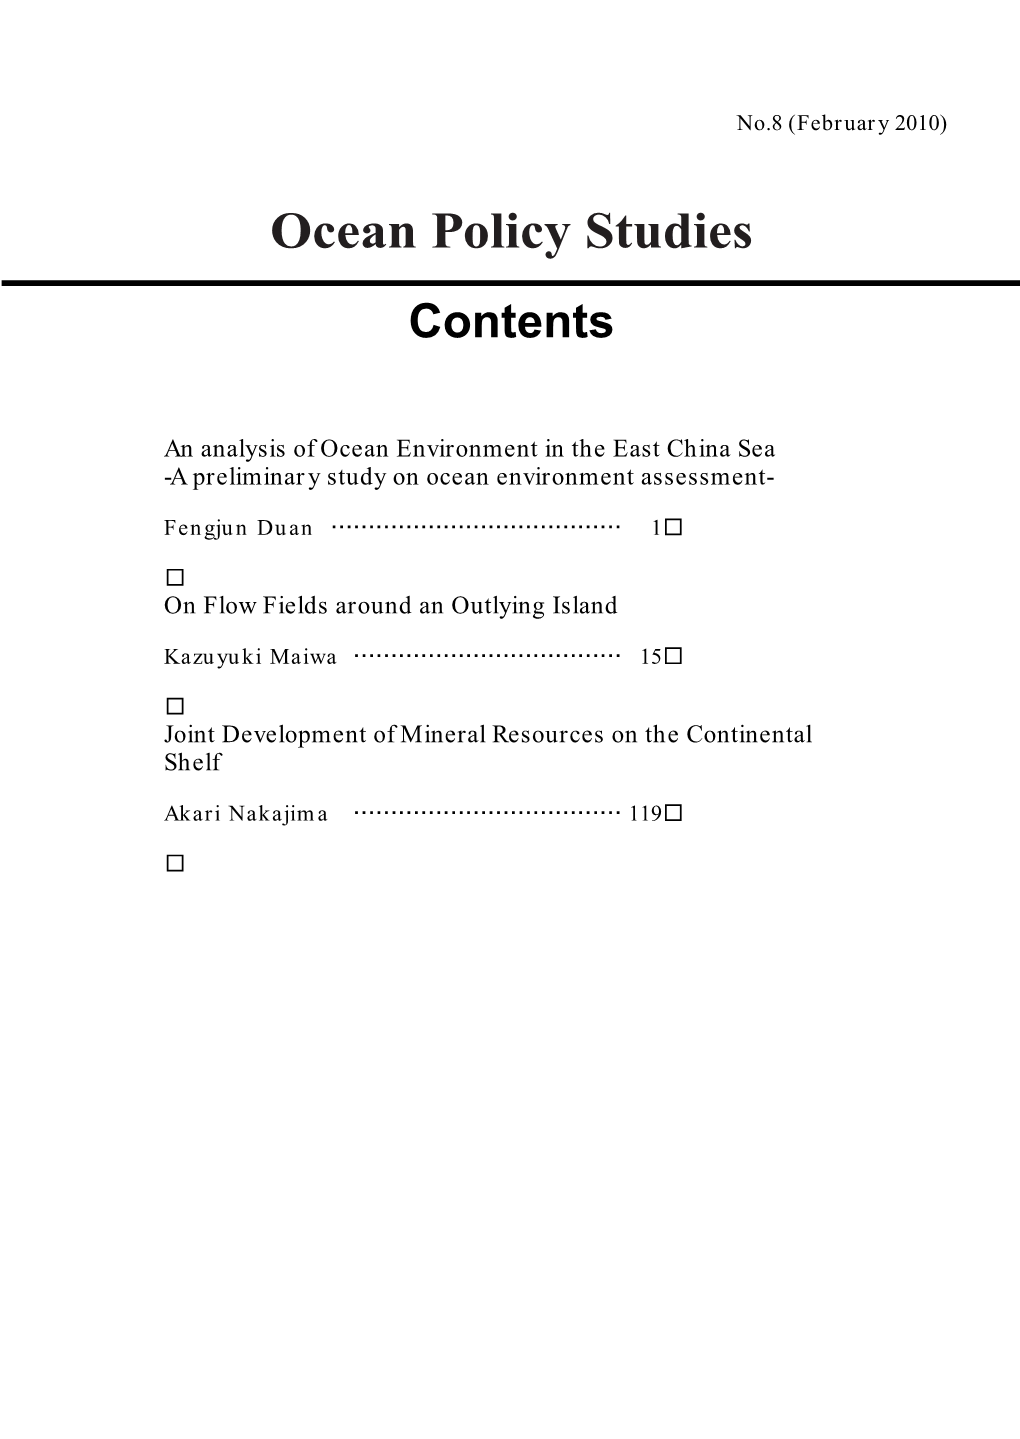 Ocean Policy Studies Contents